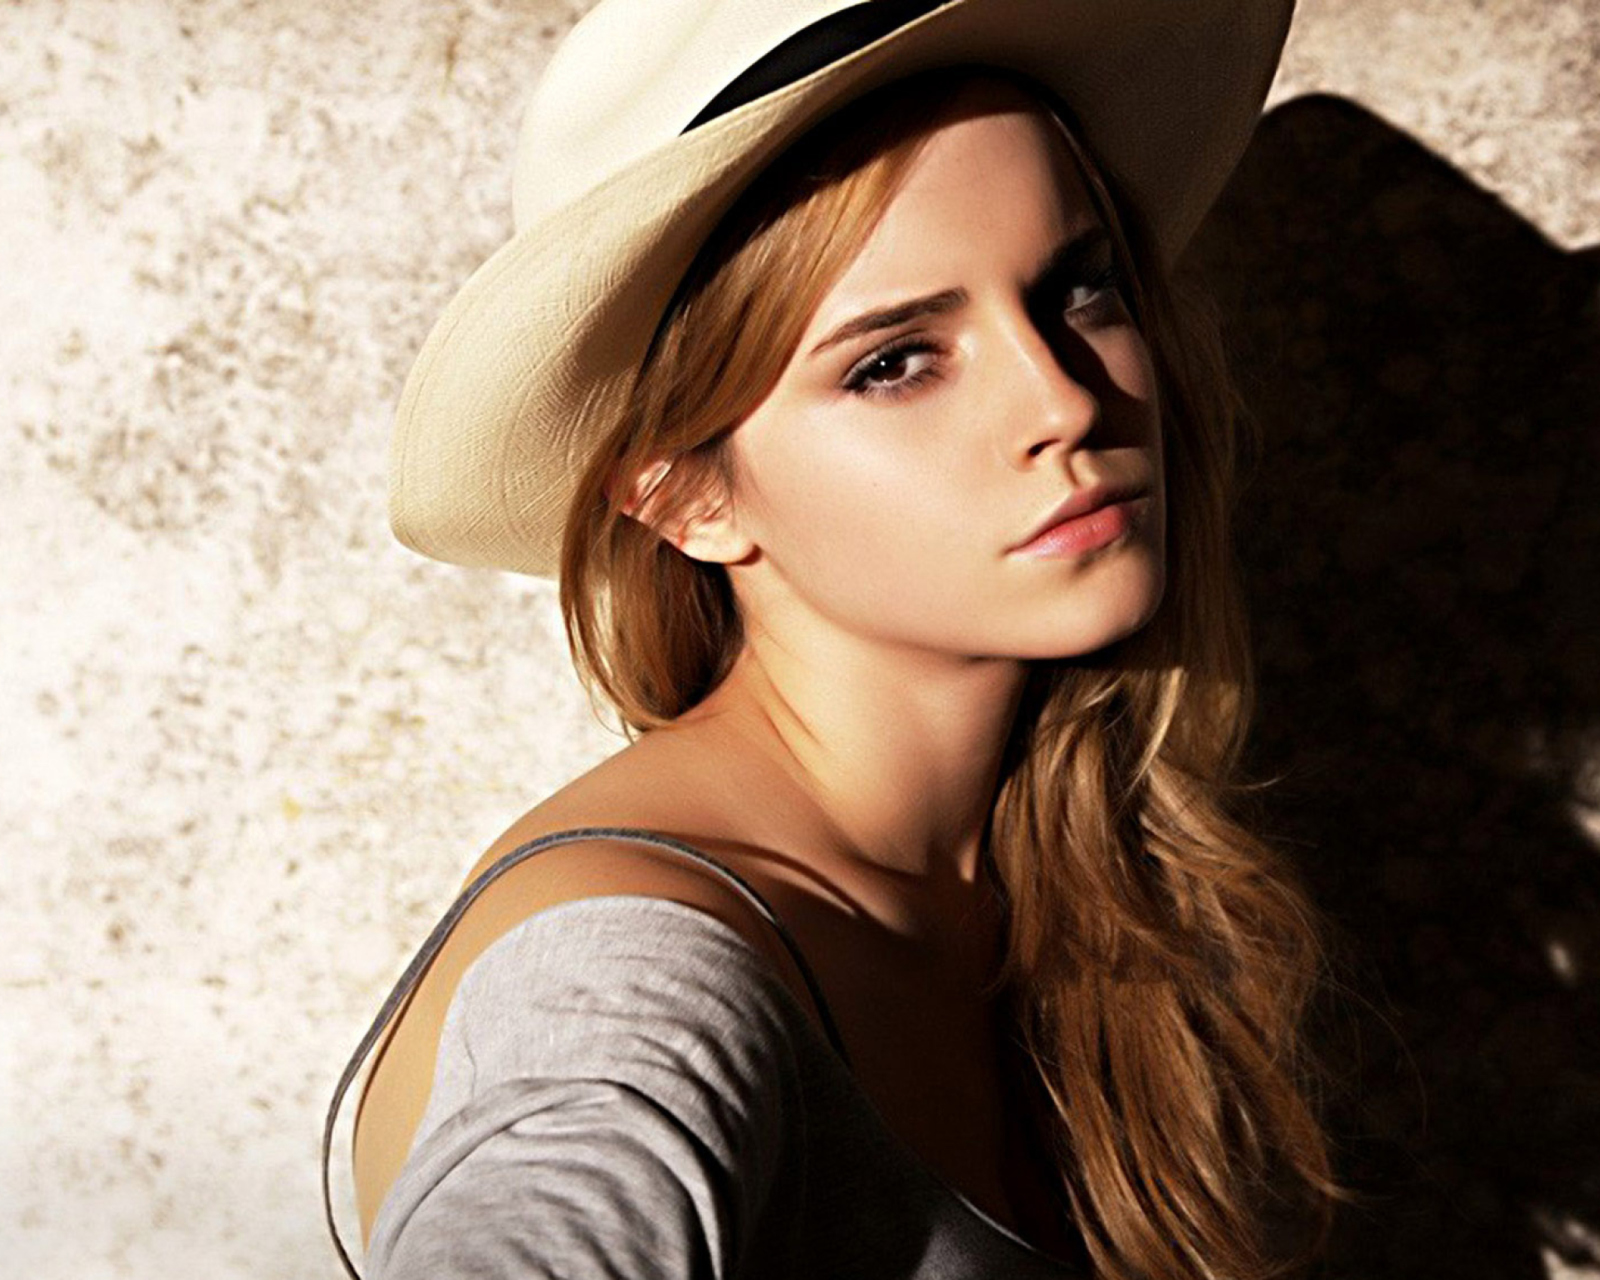 Cute Emma Watson wallpaper 1600x1280